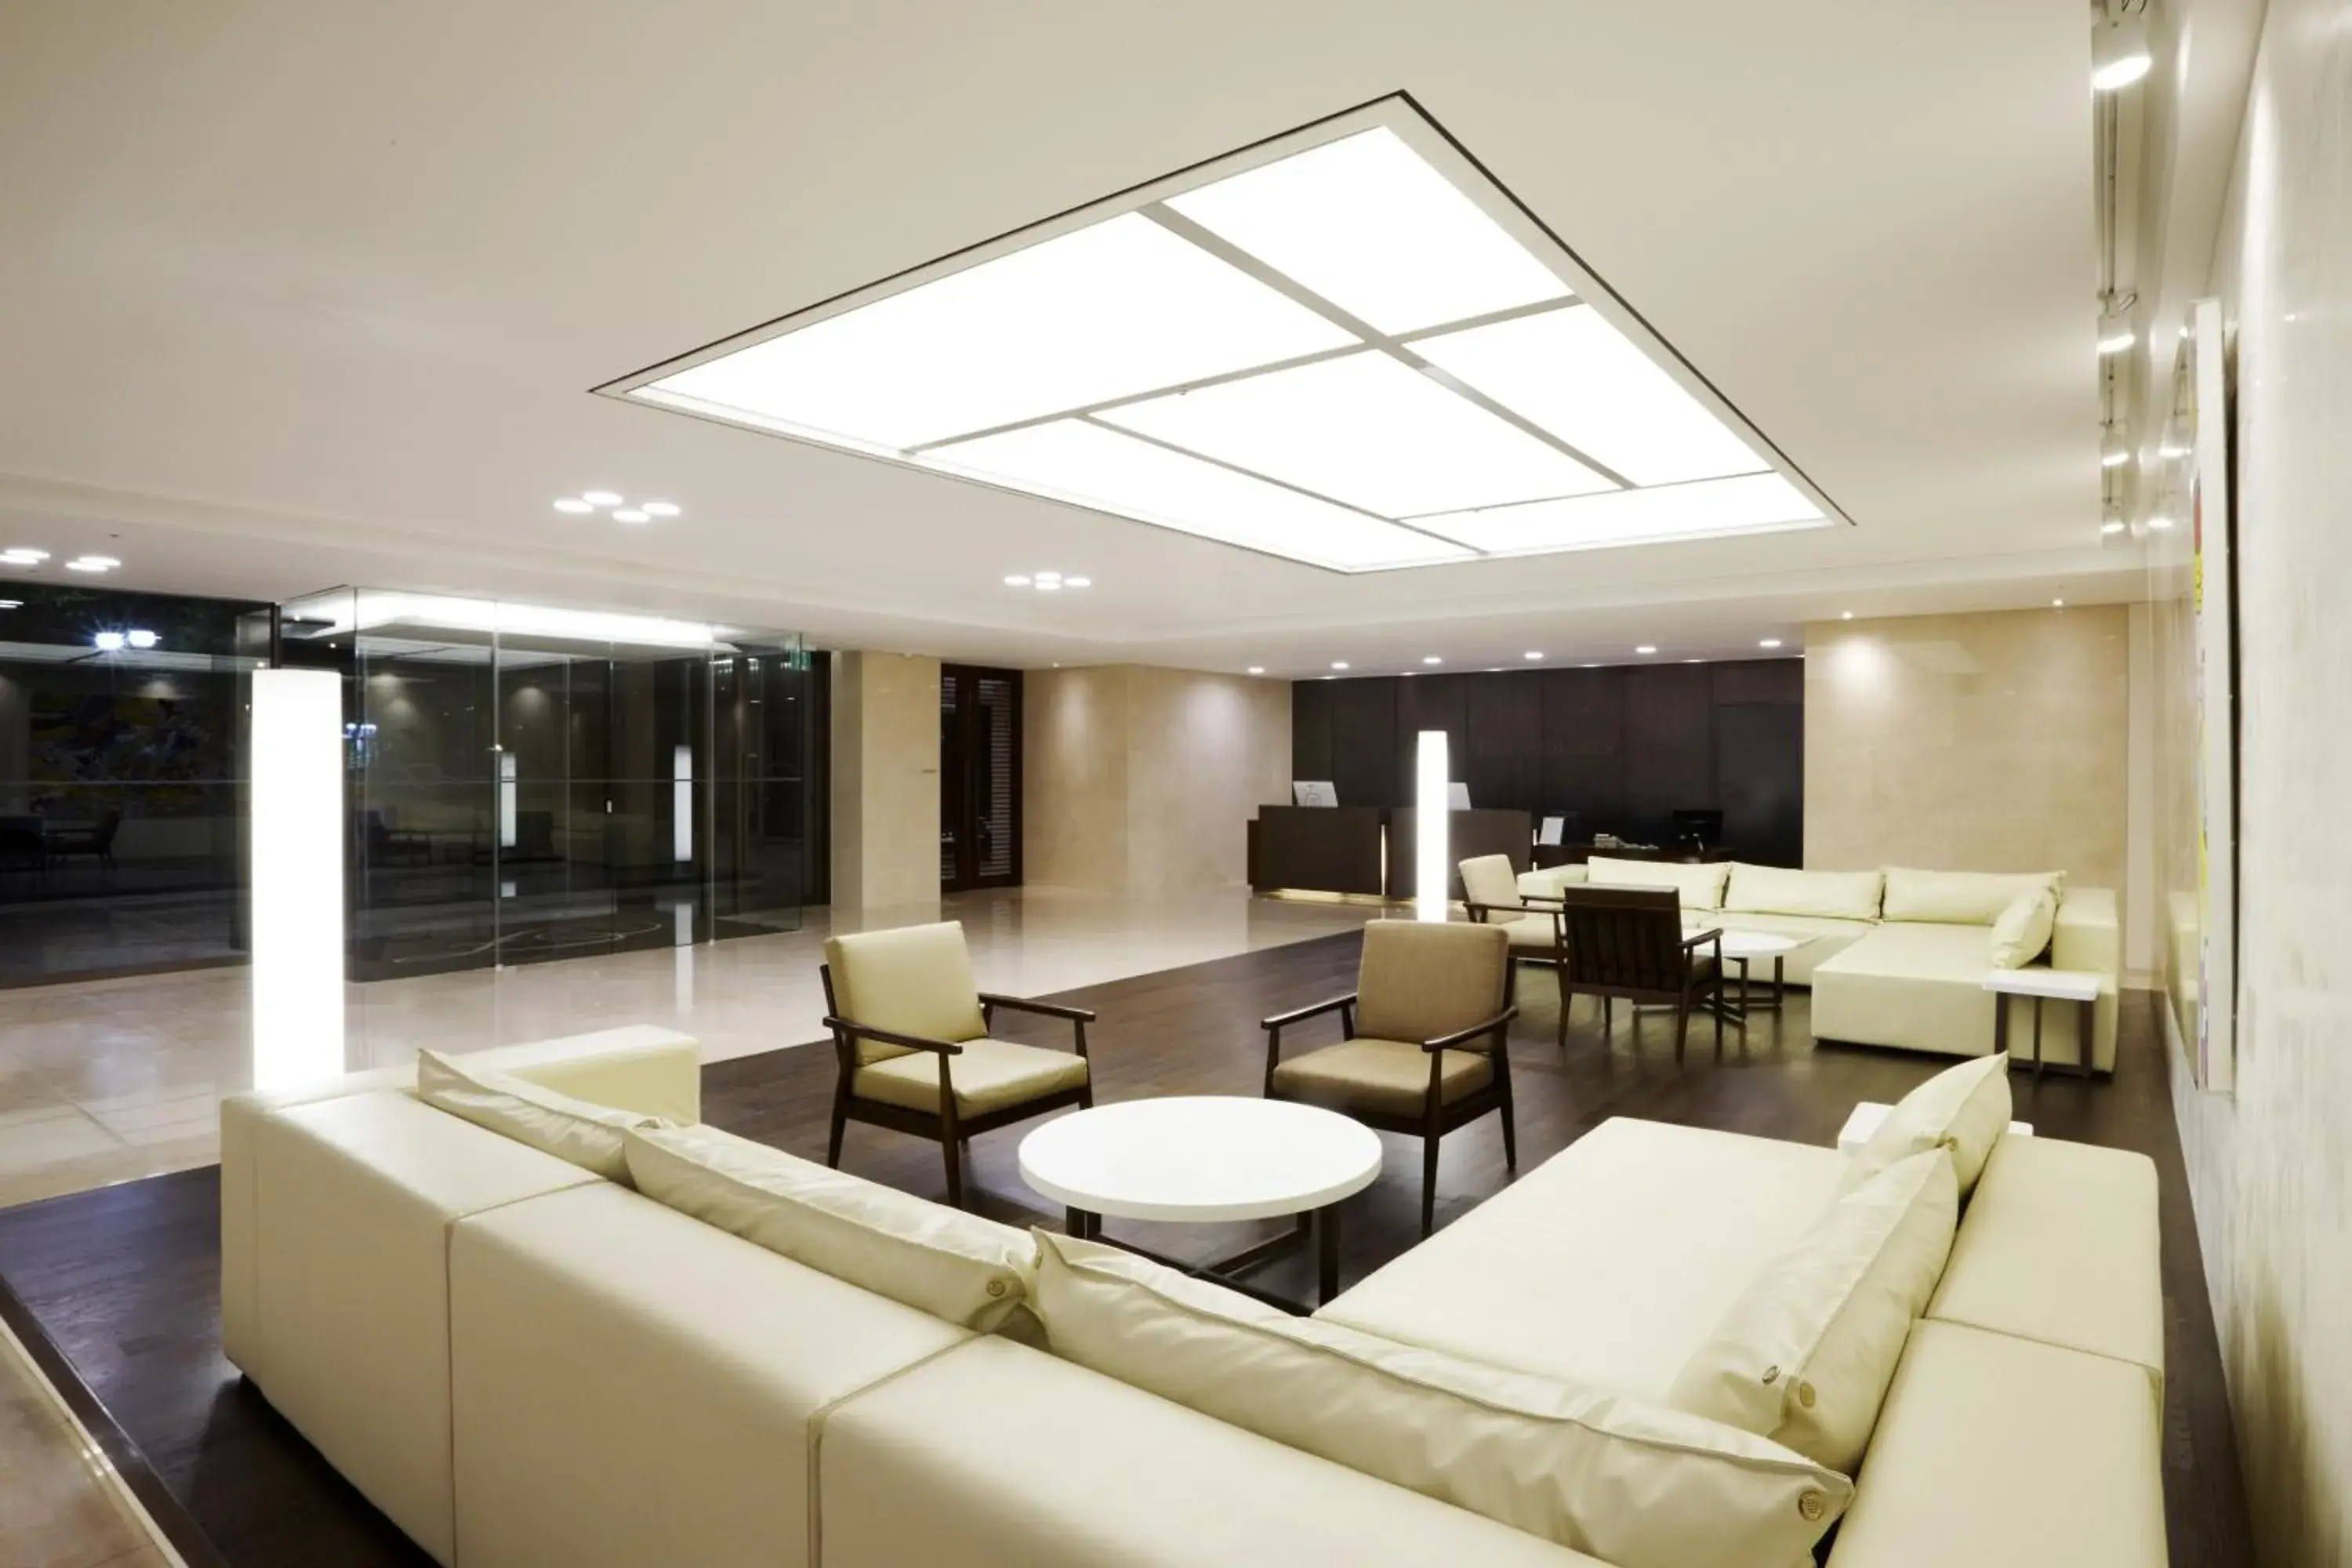 Lobby or reception in Orakai Insadong Suites